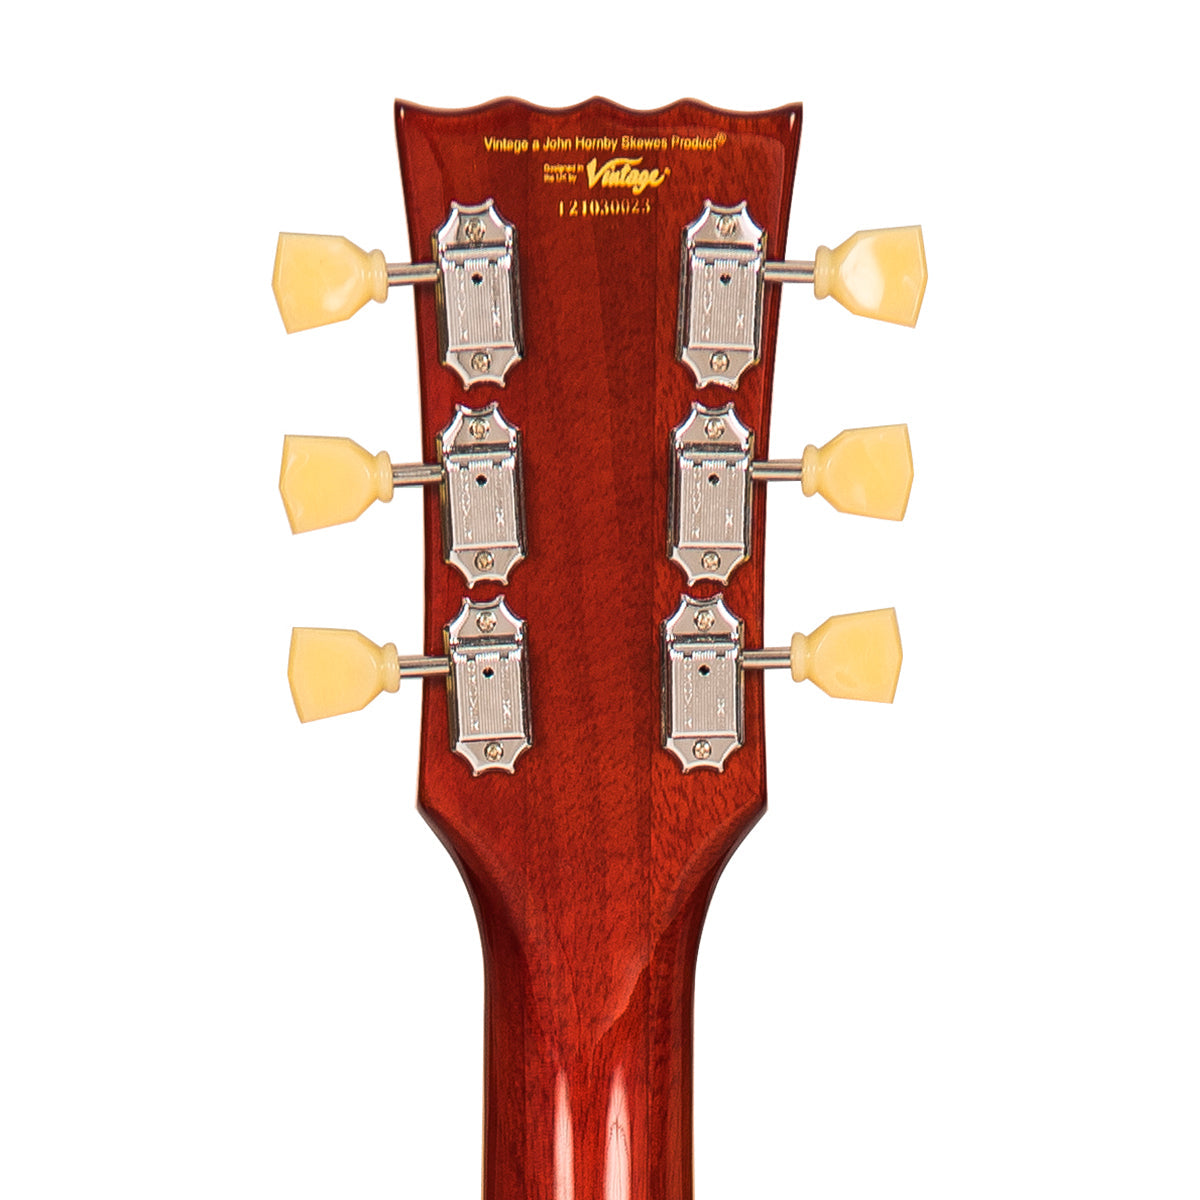 Vintage V100AFD ReIssued Electric Guitar ~ Flamed Amber, Electric Guitar for sale at Richards Guitars.